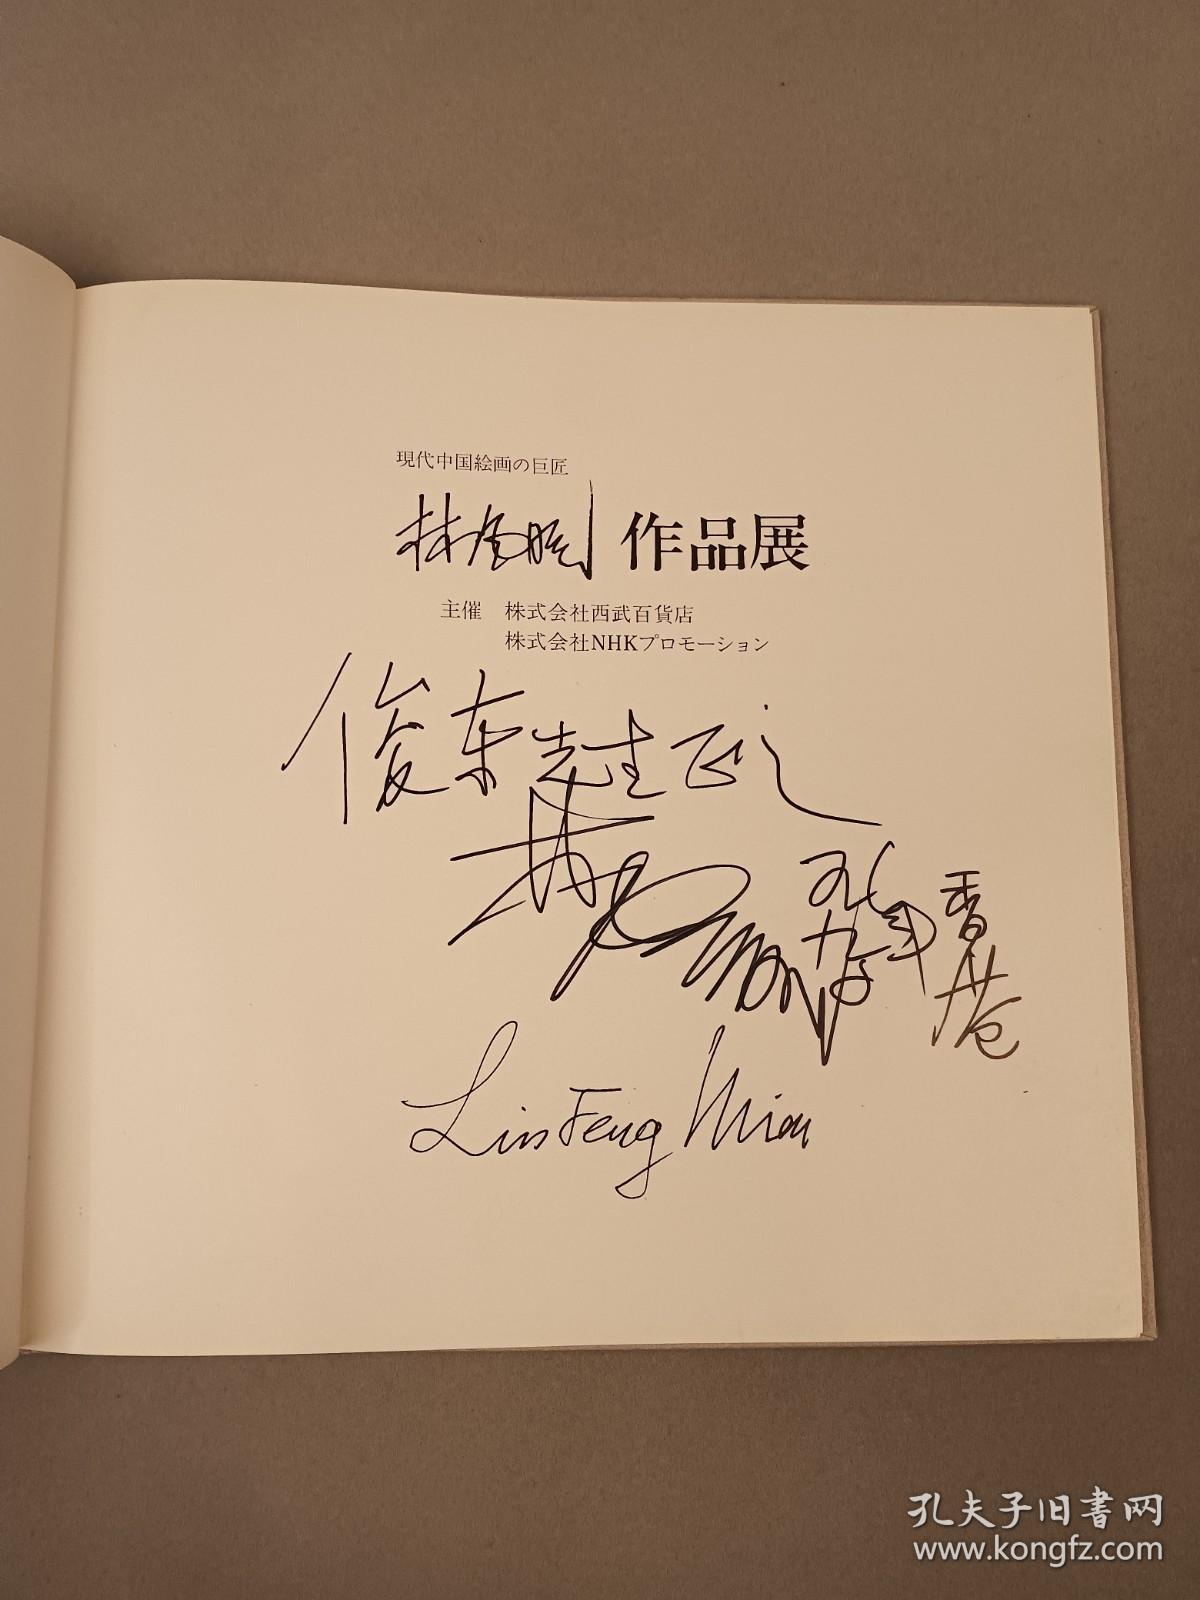 林风眠签赠《林风眠作品展》1990年日本西武百货展览册